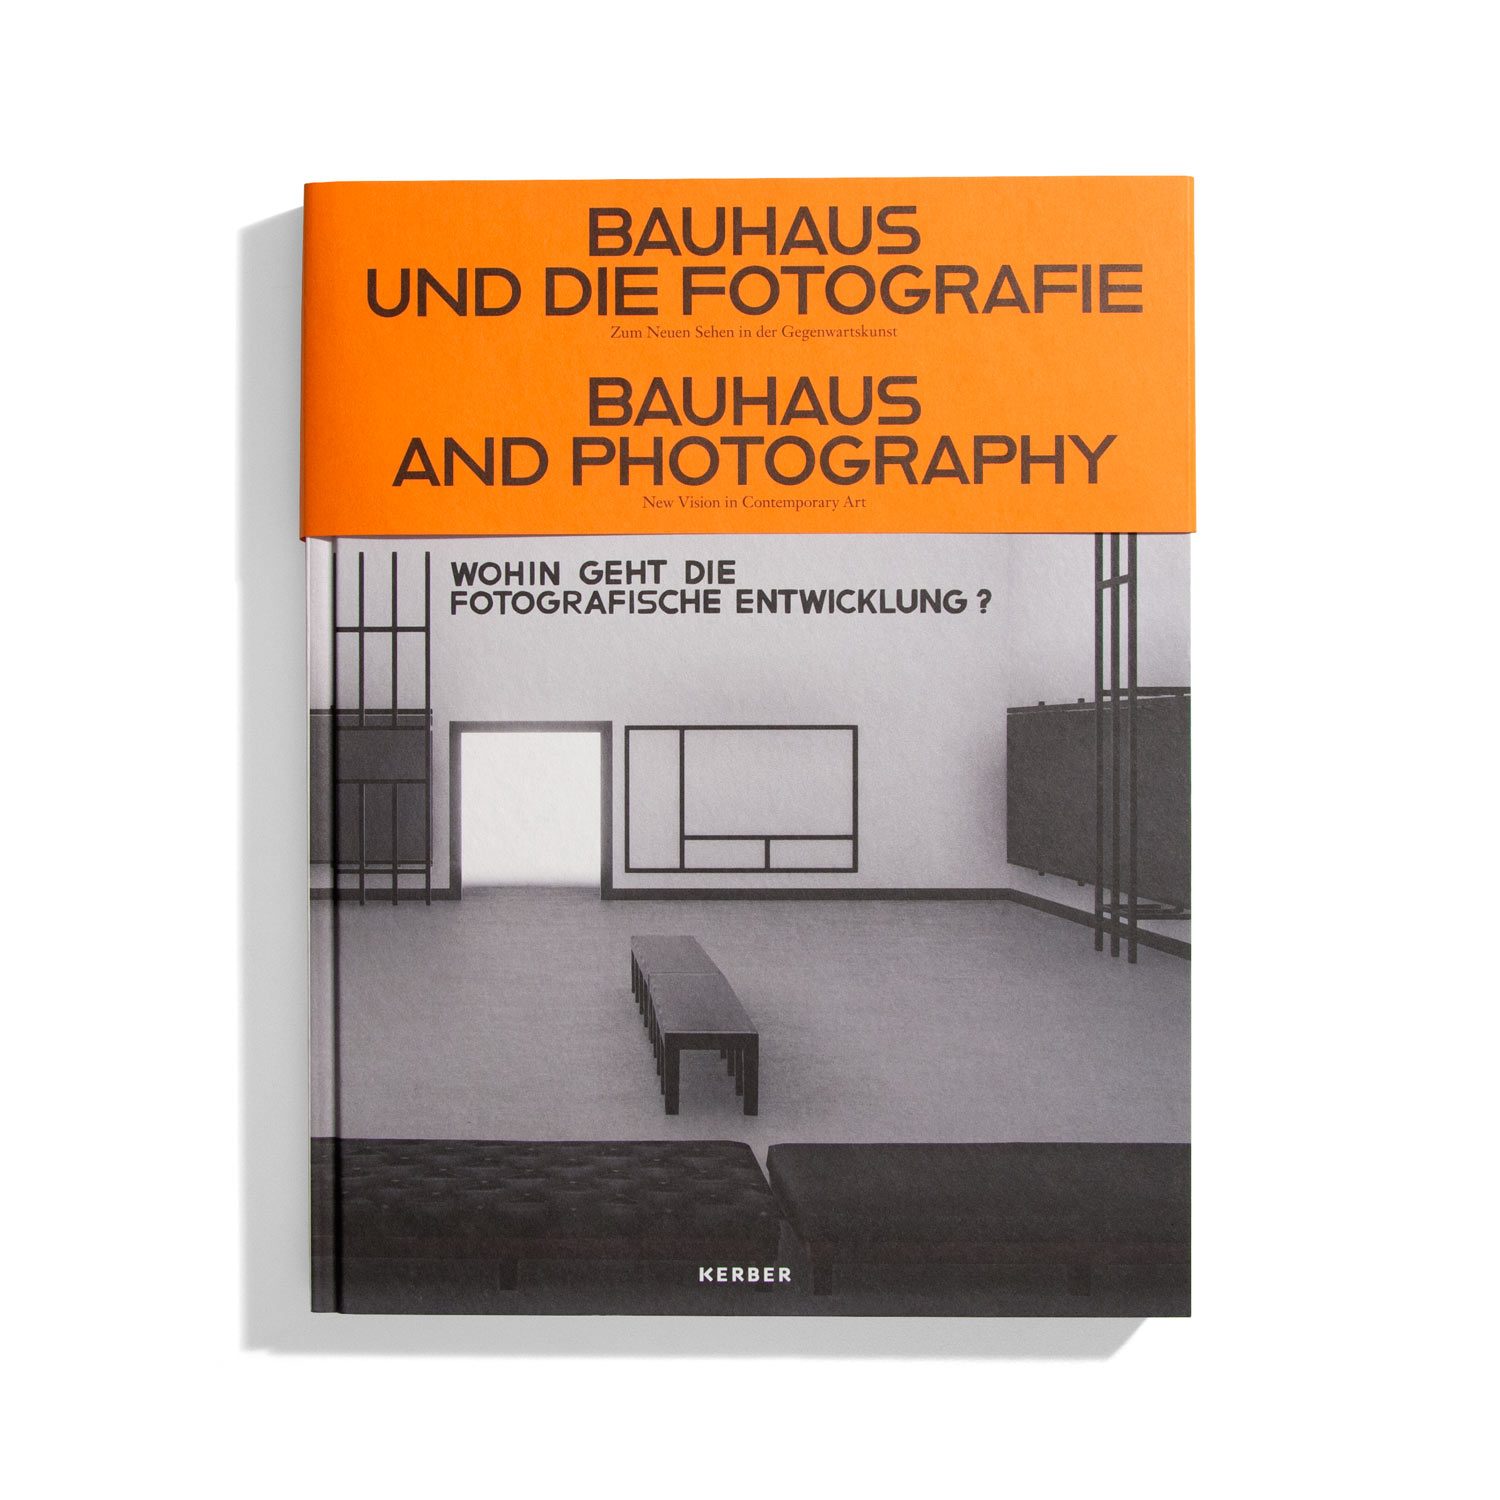 Bauhaus und die Fotografie / Bauhaus and Photography